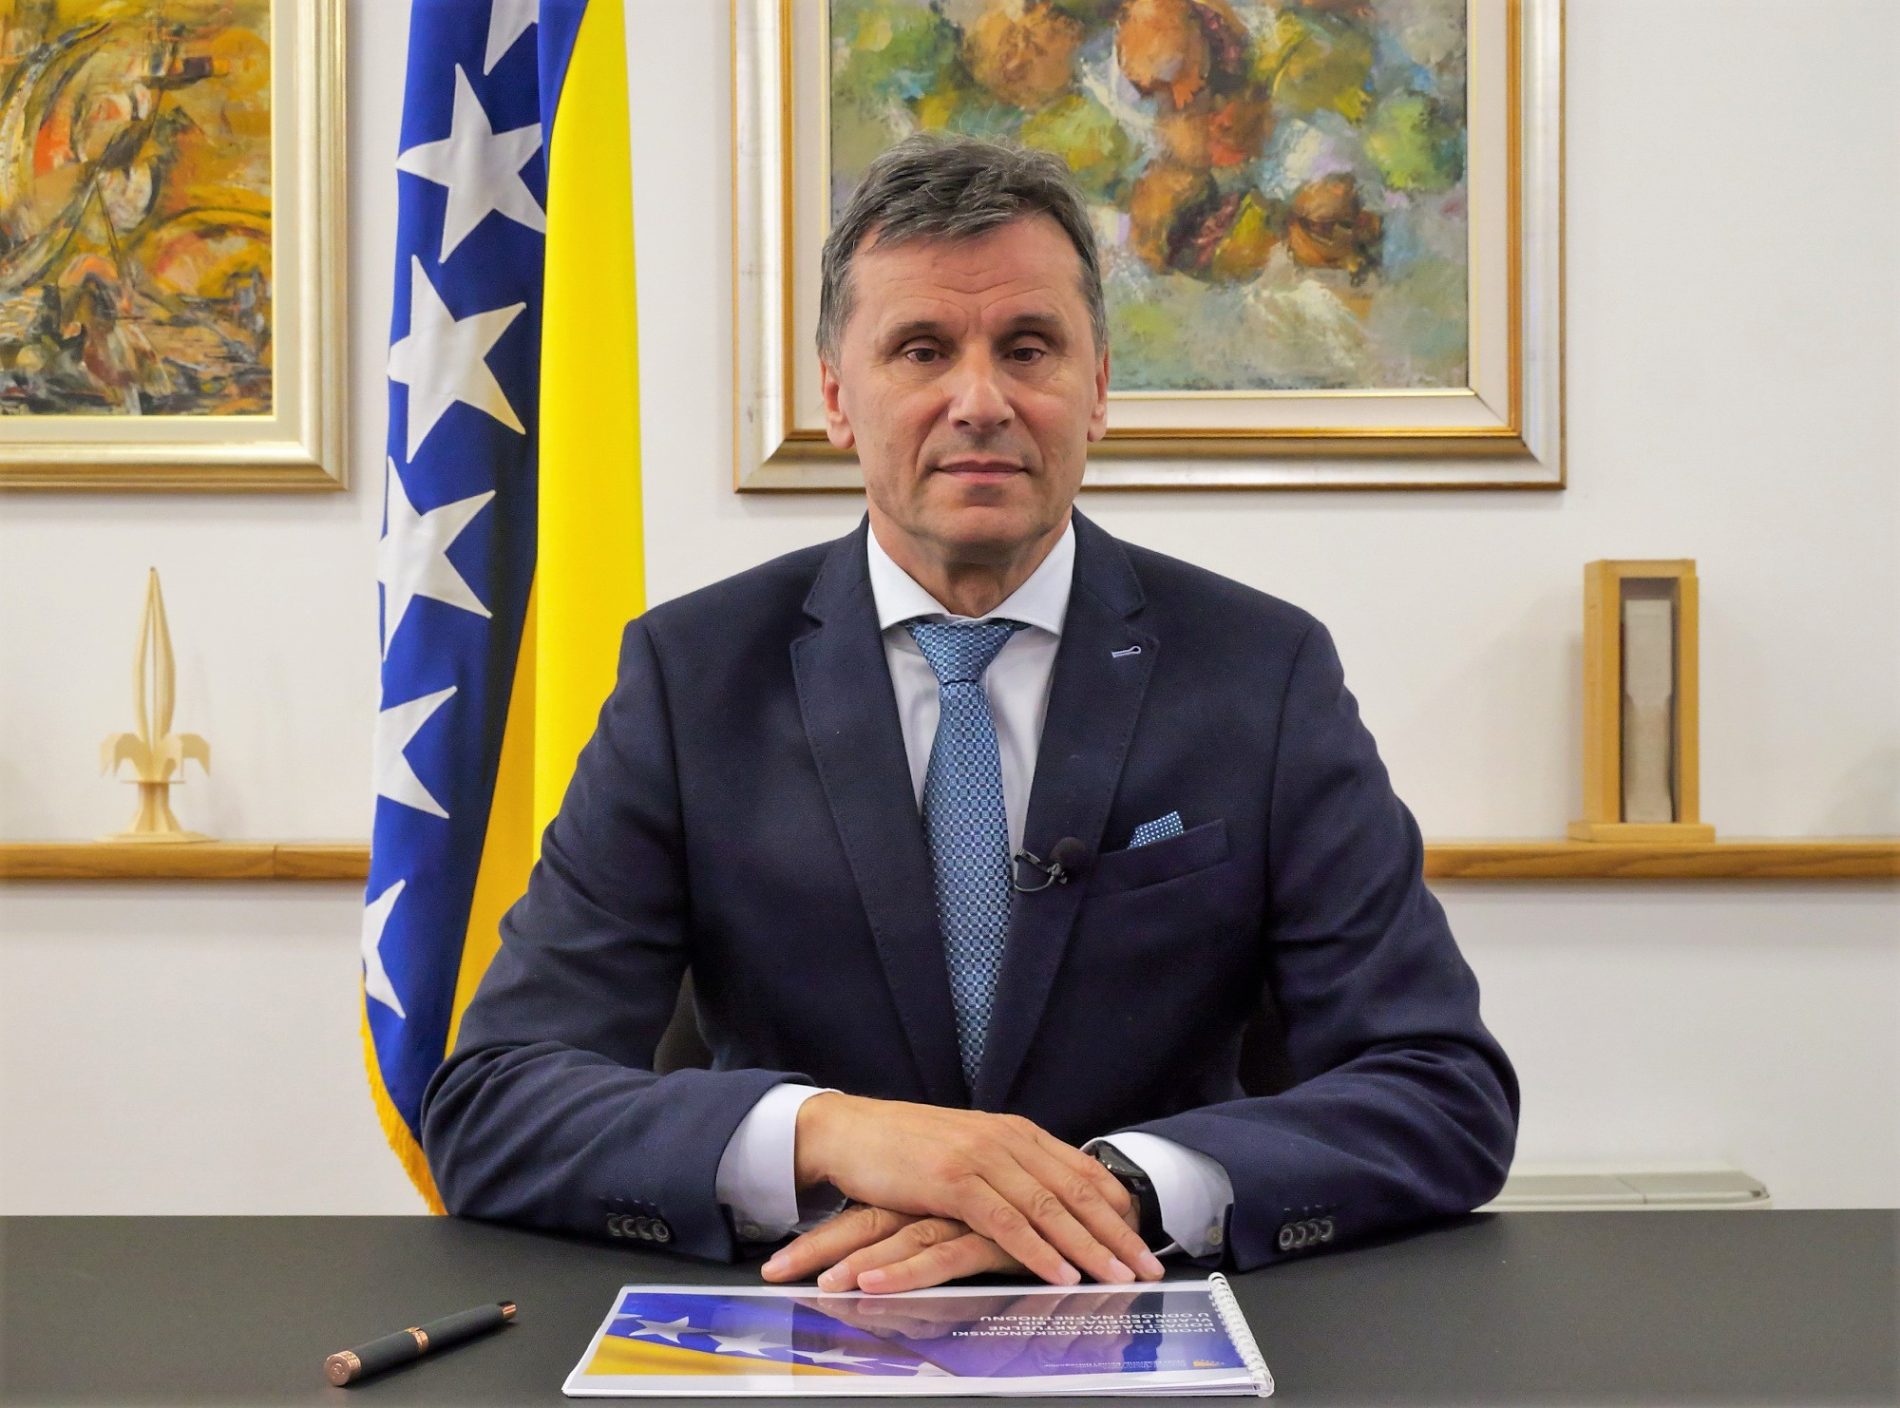 Poruka premijera Novalića: Nastavili smo jačati našu ekonomiju, povećavati penzije, zaposlenost, investicije